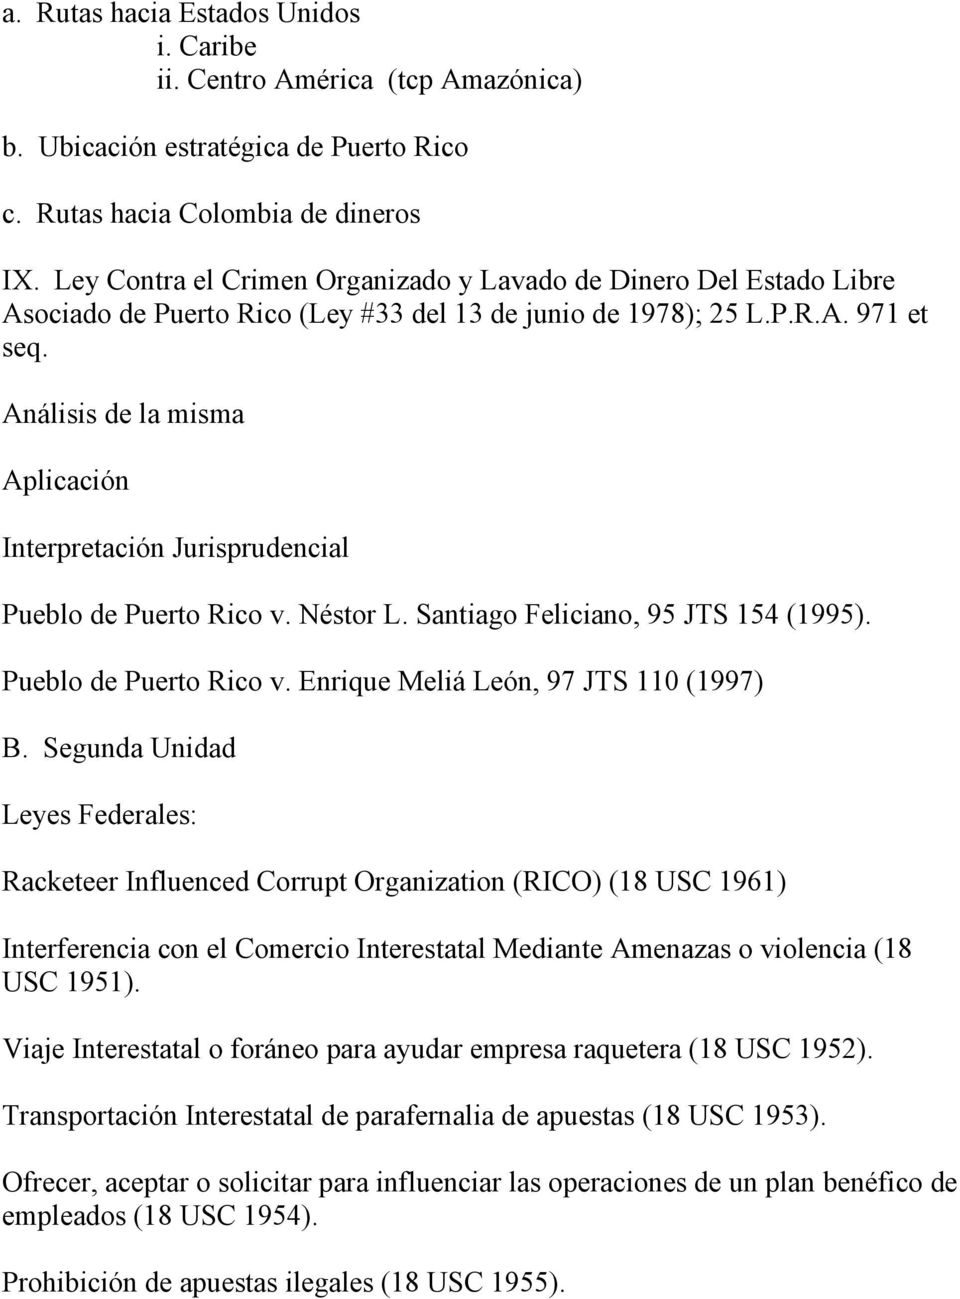 Análisis de la misma Aplicación Interpretación Jurisprudencial Pueblo de Puerto Rico v. Néstor L. Santiago Feliciano, 95 JTS 154 (1995). Pueblo de Puerto Rico v. Enrique Meliá León, 97 JTS 110 (1997) B.